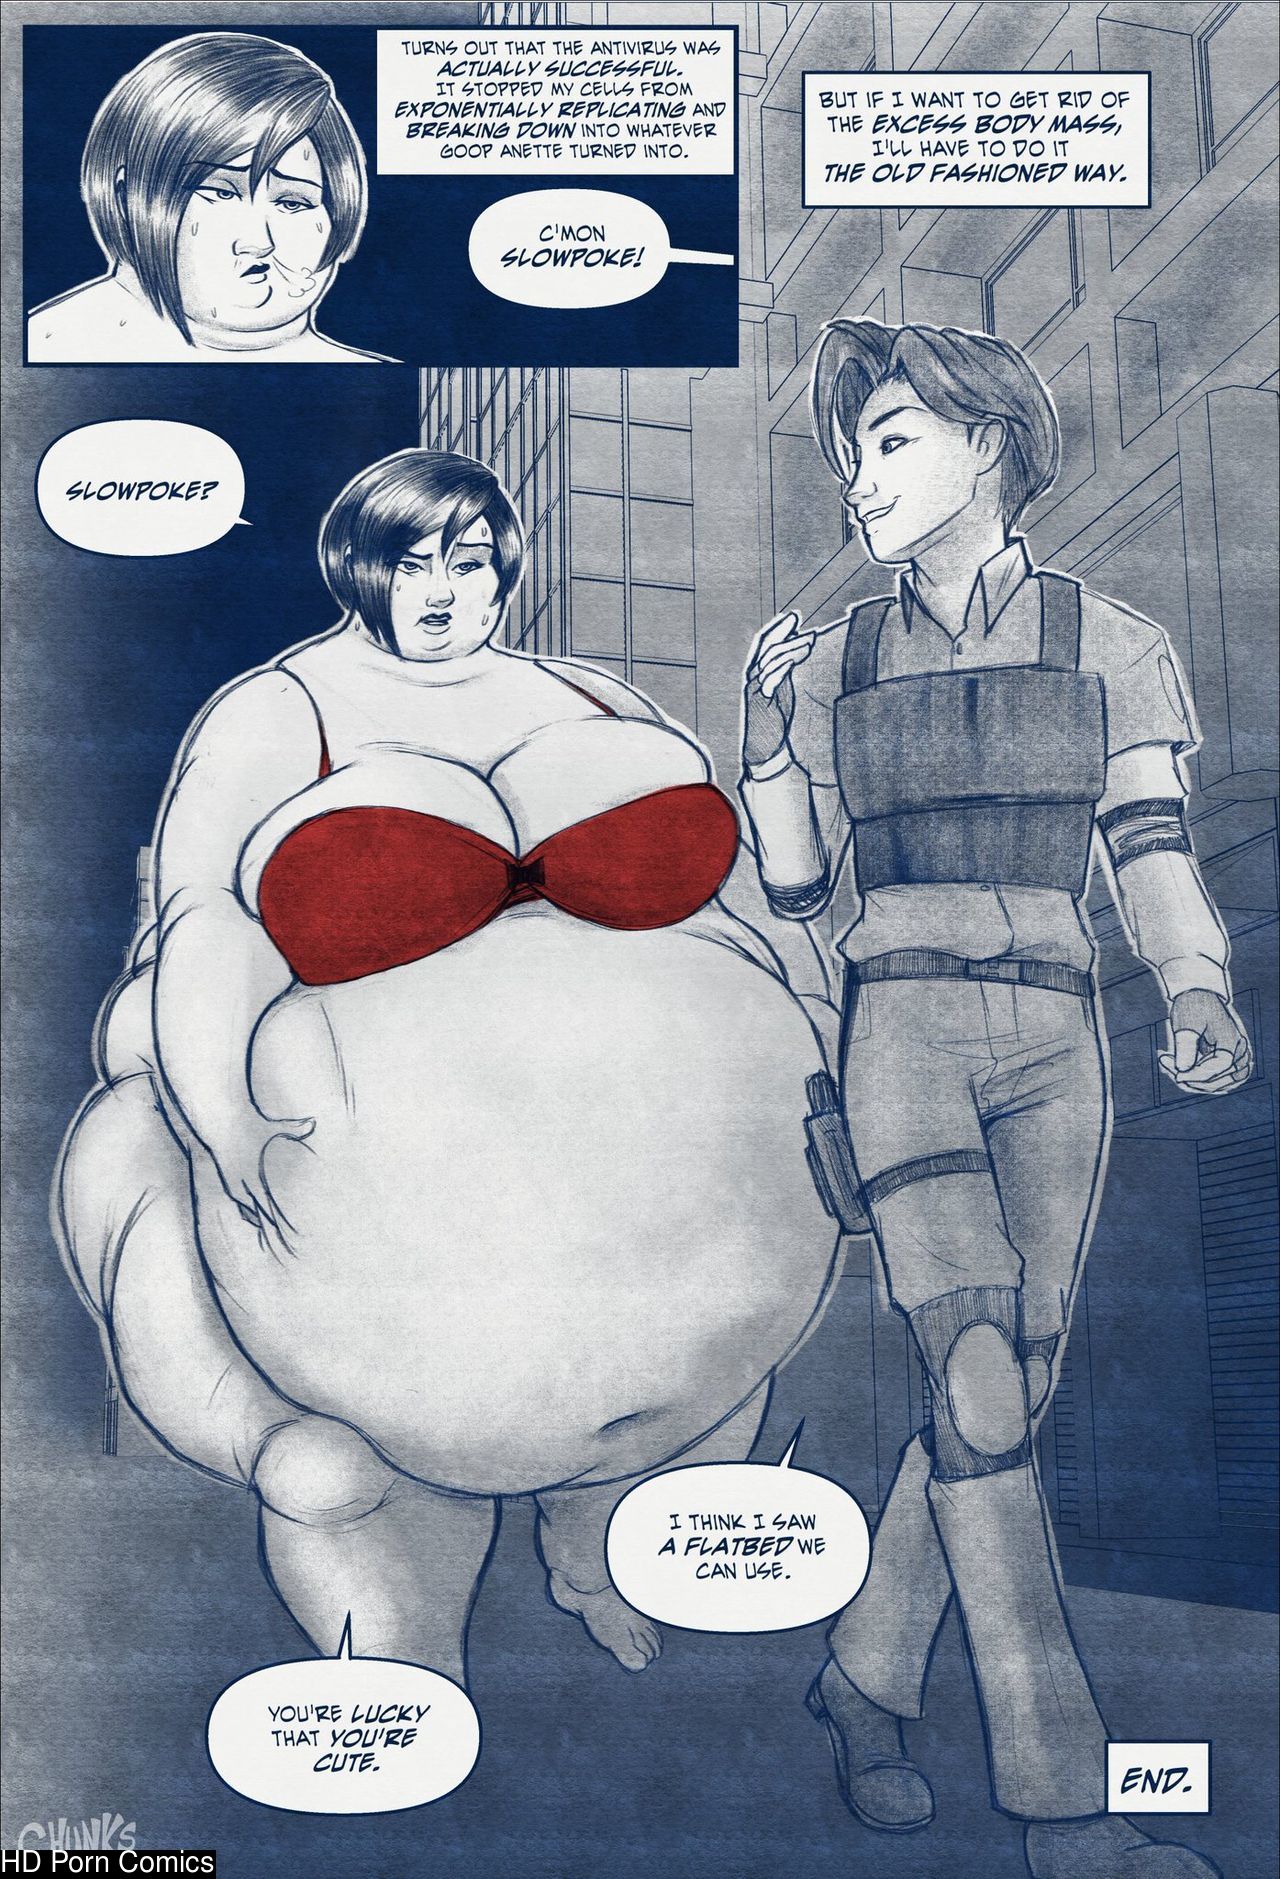 Fat Book Porn - Fat Wong comic porn - HD Porn Comics